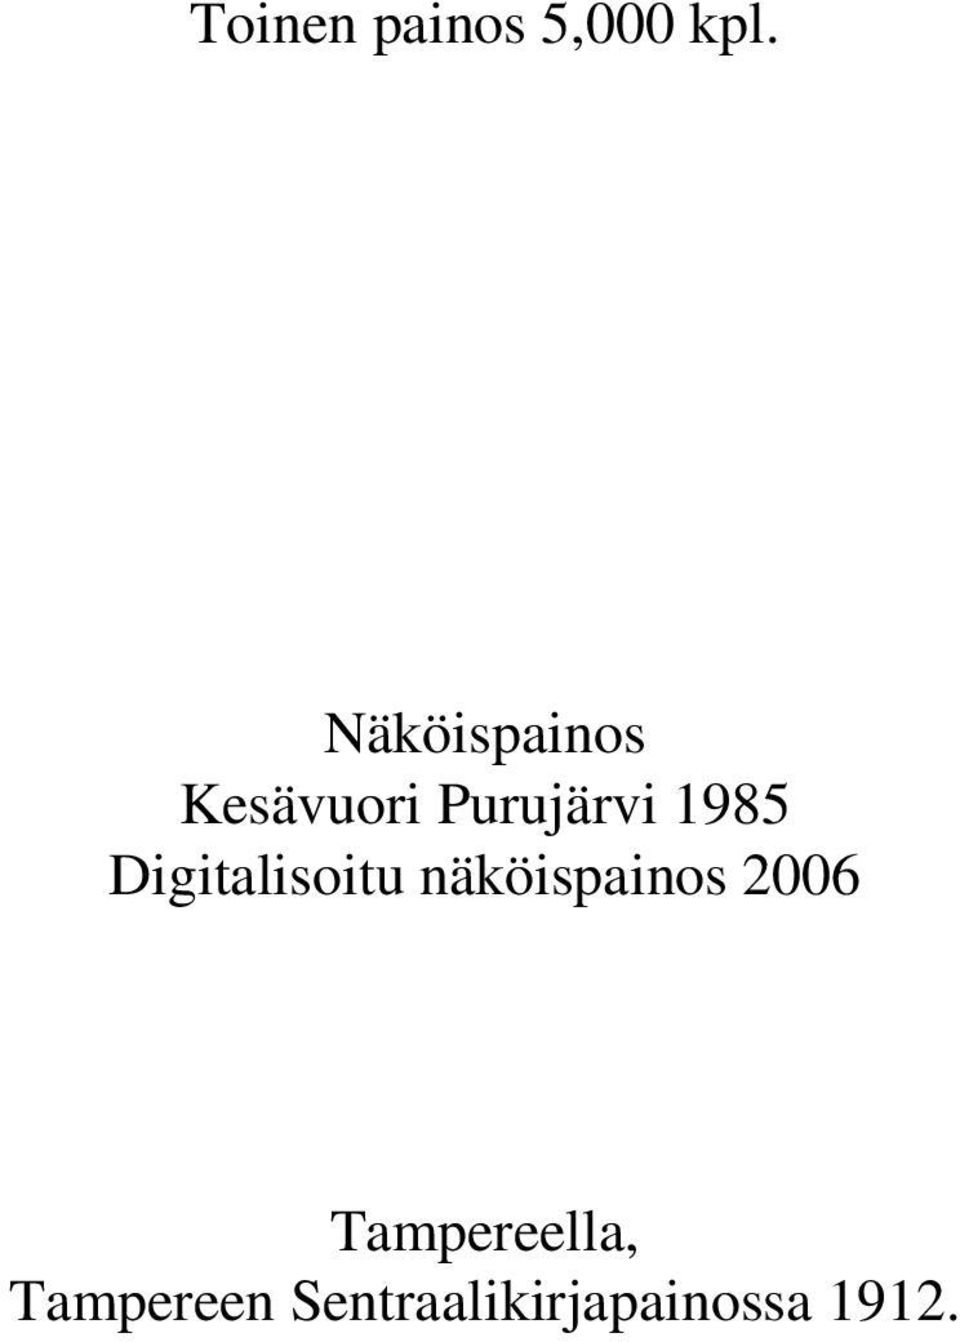 1985 Digitalisoitu näköispainos 2006